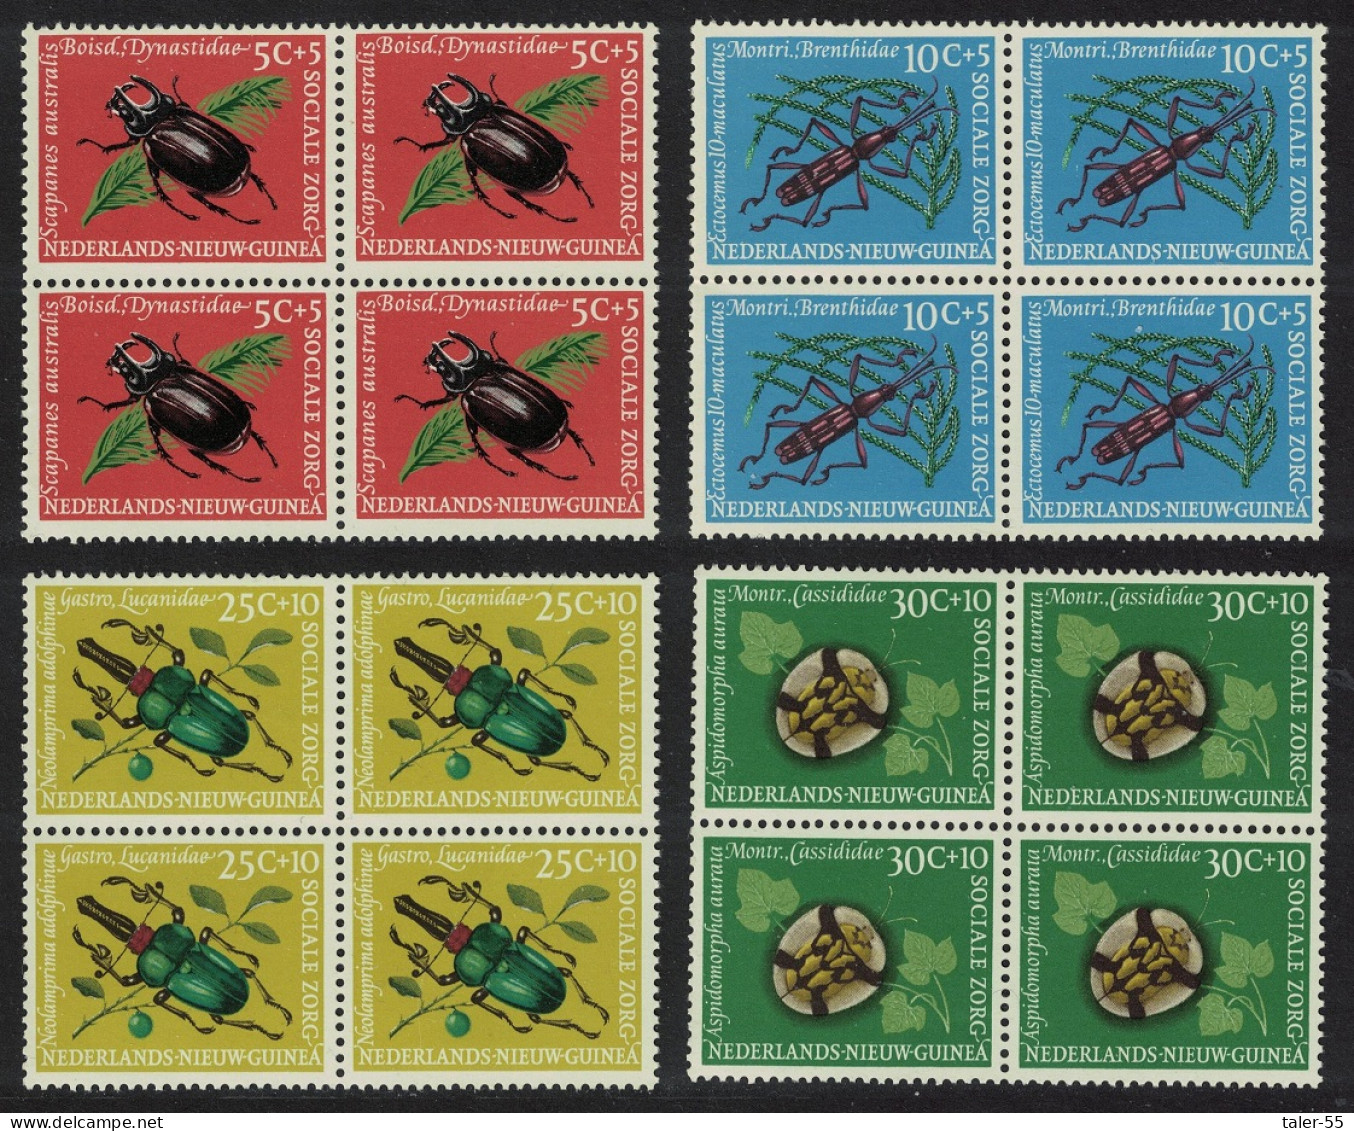 Neth. New Guinea Beetles 4v Blocks Of 4 1961 MNH SG#75-78 - Nuova Guinea Olandese